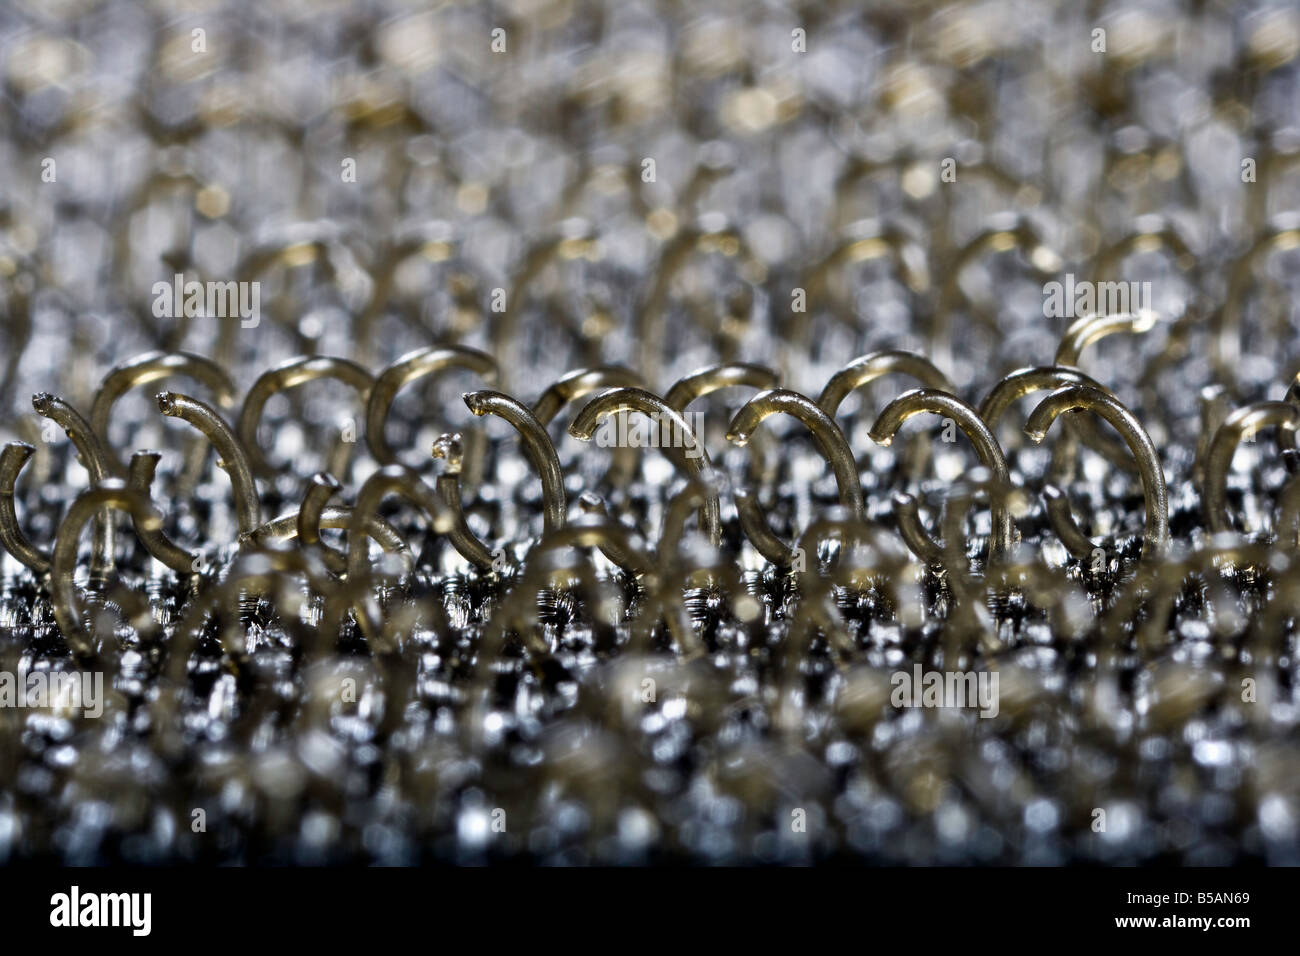 Extreme Close Up of Velcro Hooks Stock Photo - Alamy